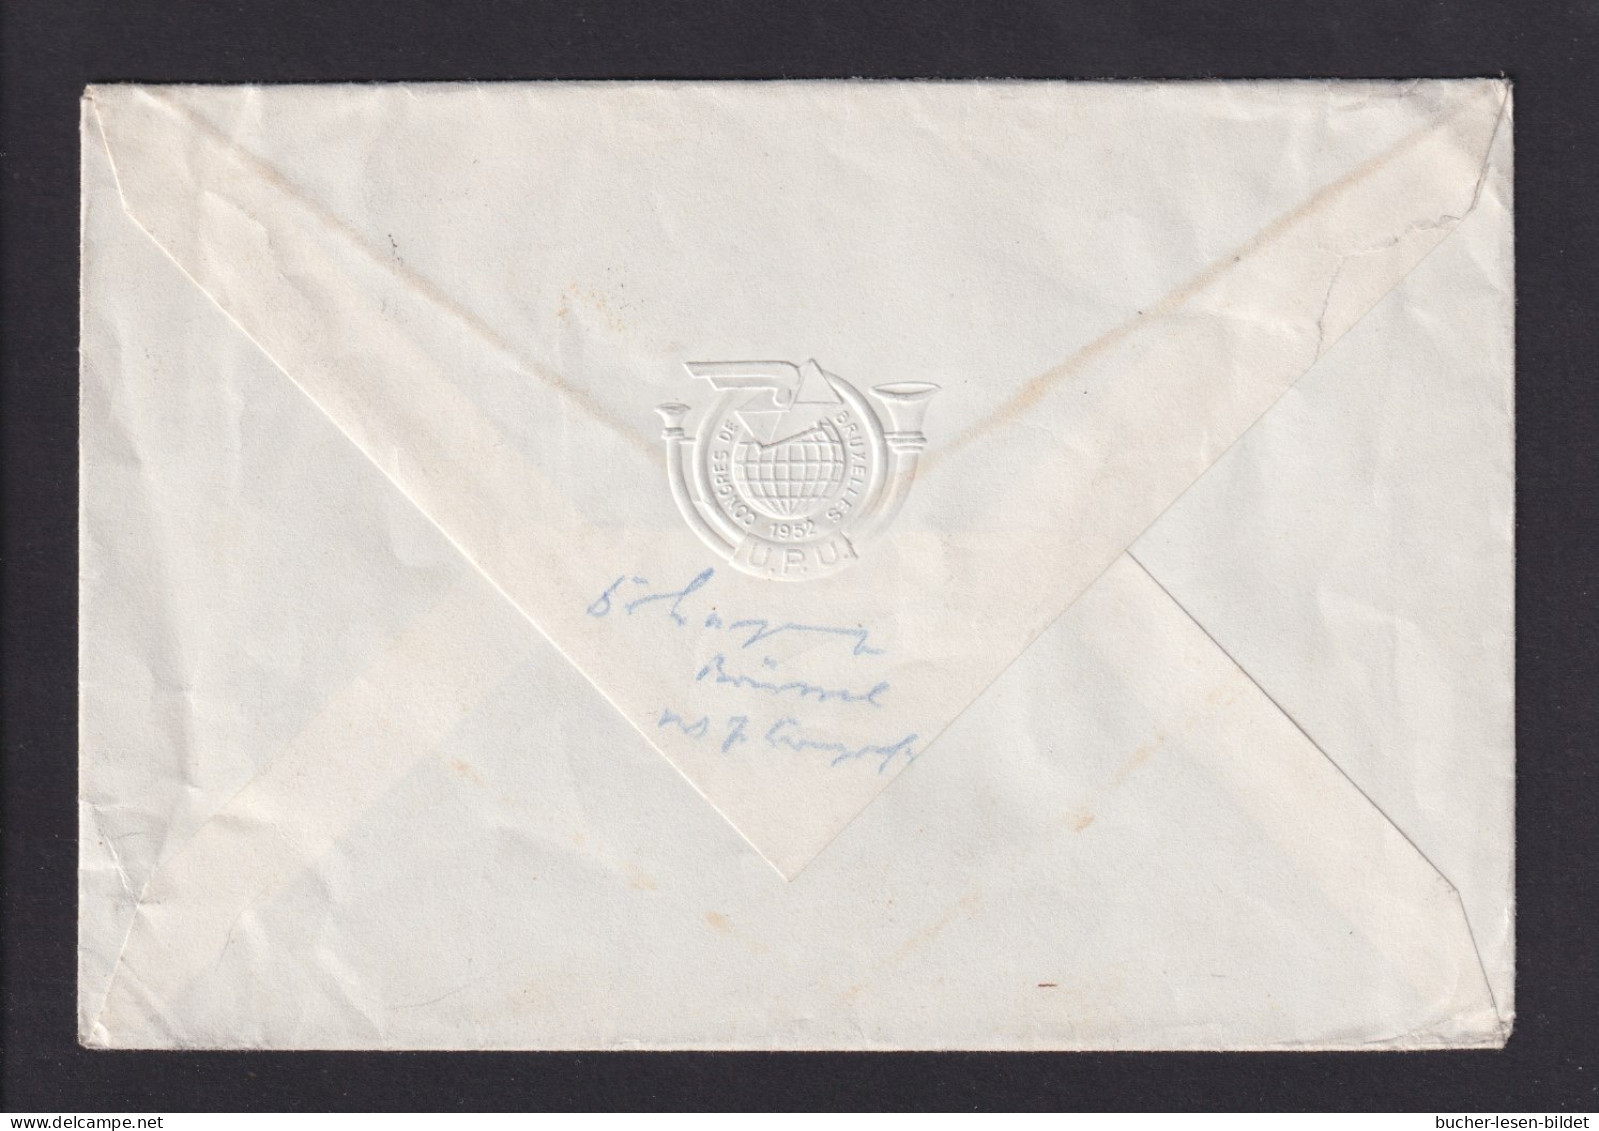 1952 - UPU-Kongress Brüssel - Delegiertenbrief Mit Sonderstempel Und Passender Frankatur - UPU (Unione Postale Universale)